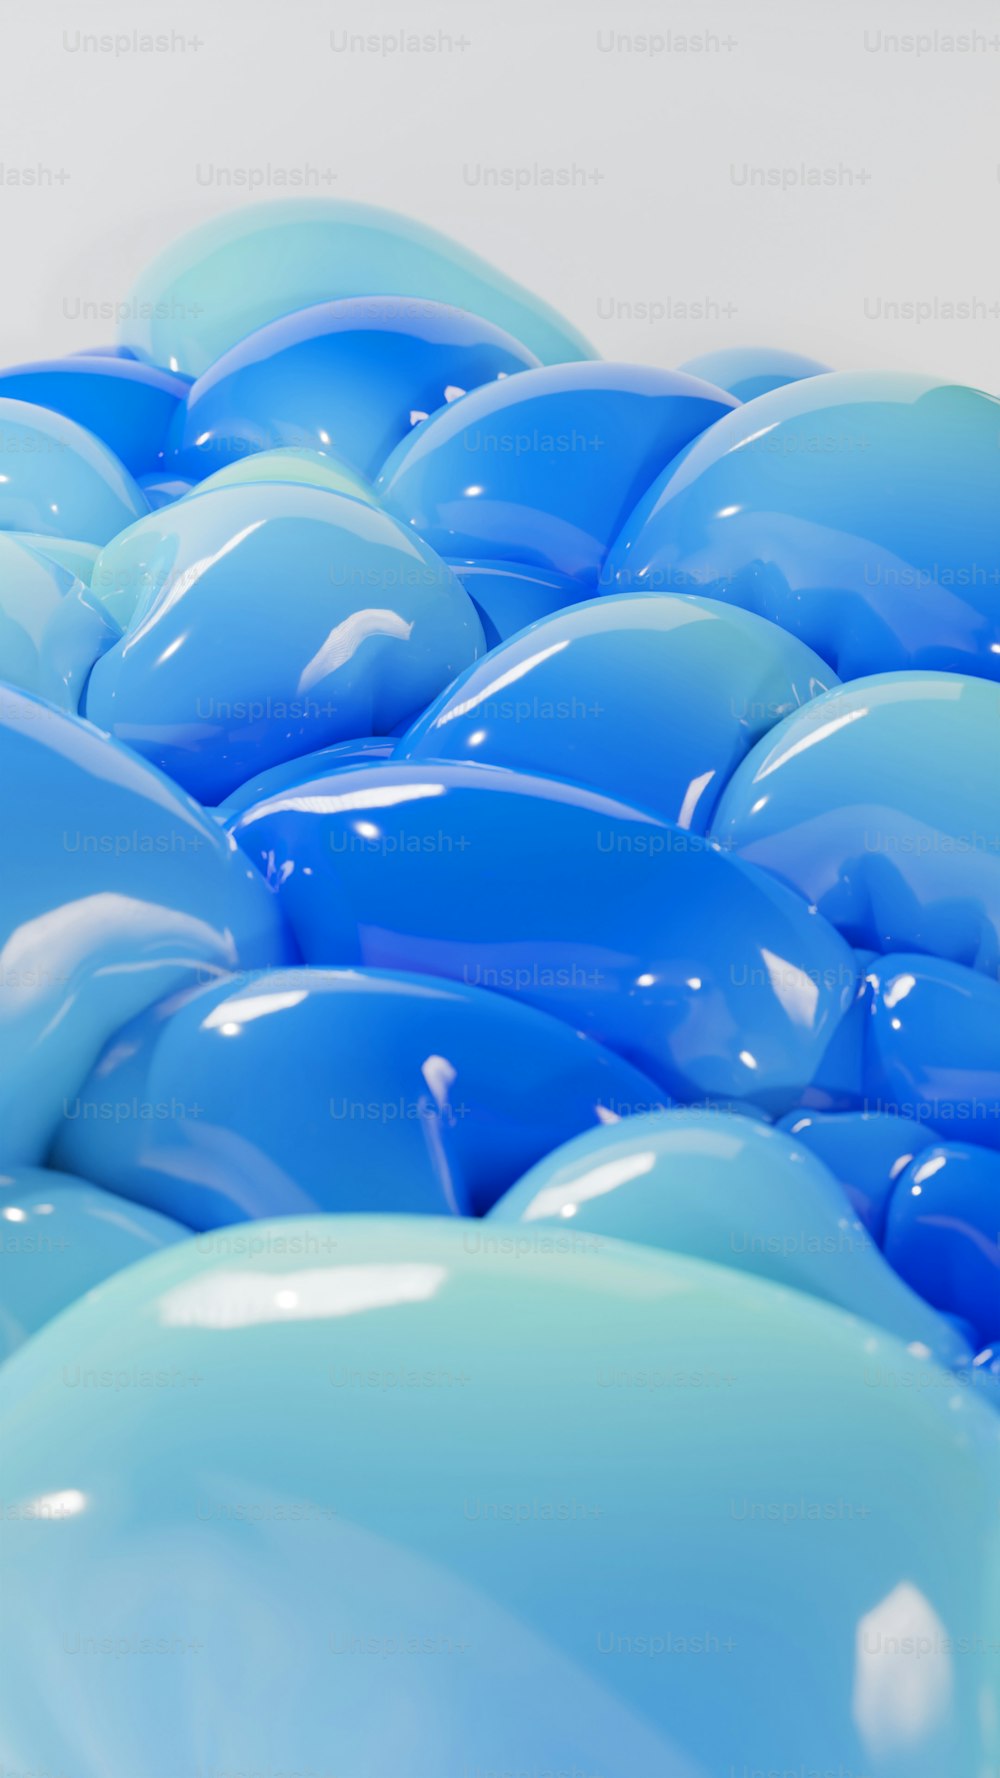 Un montón de globos azules sentados uno encima del otro